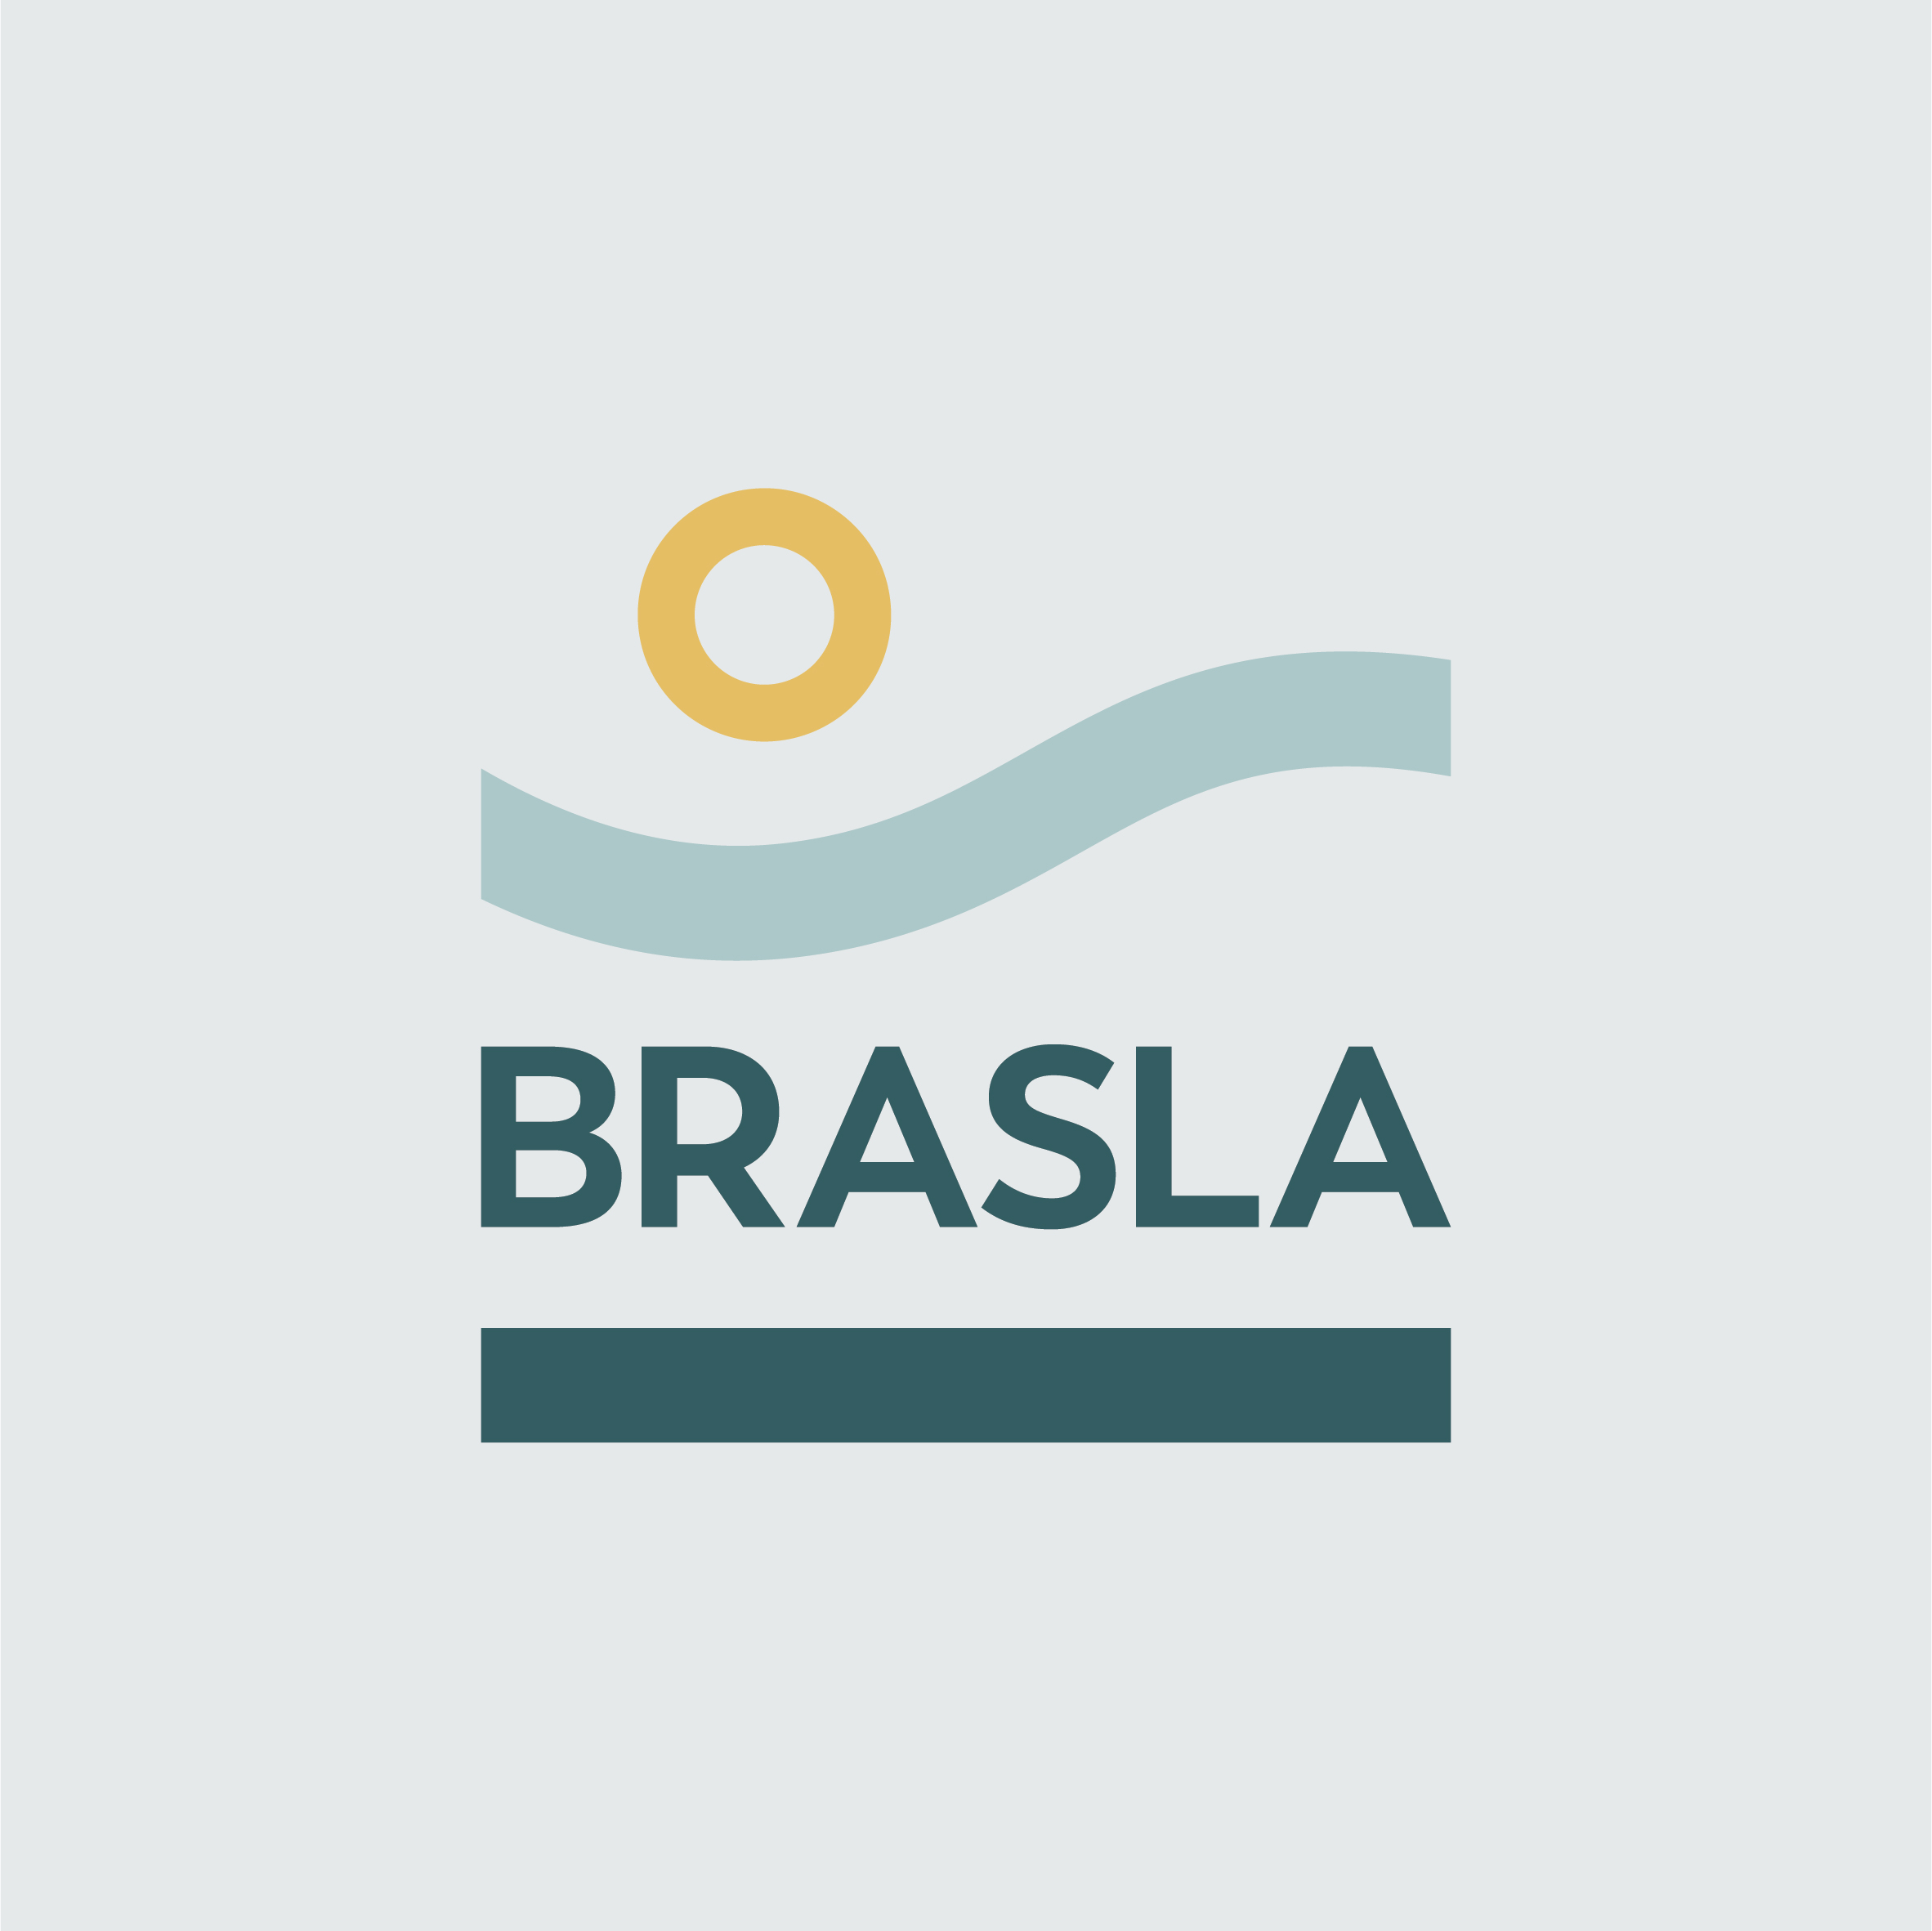 BRASLA-58.jpg